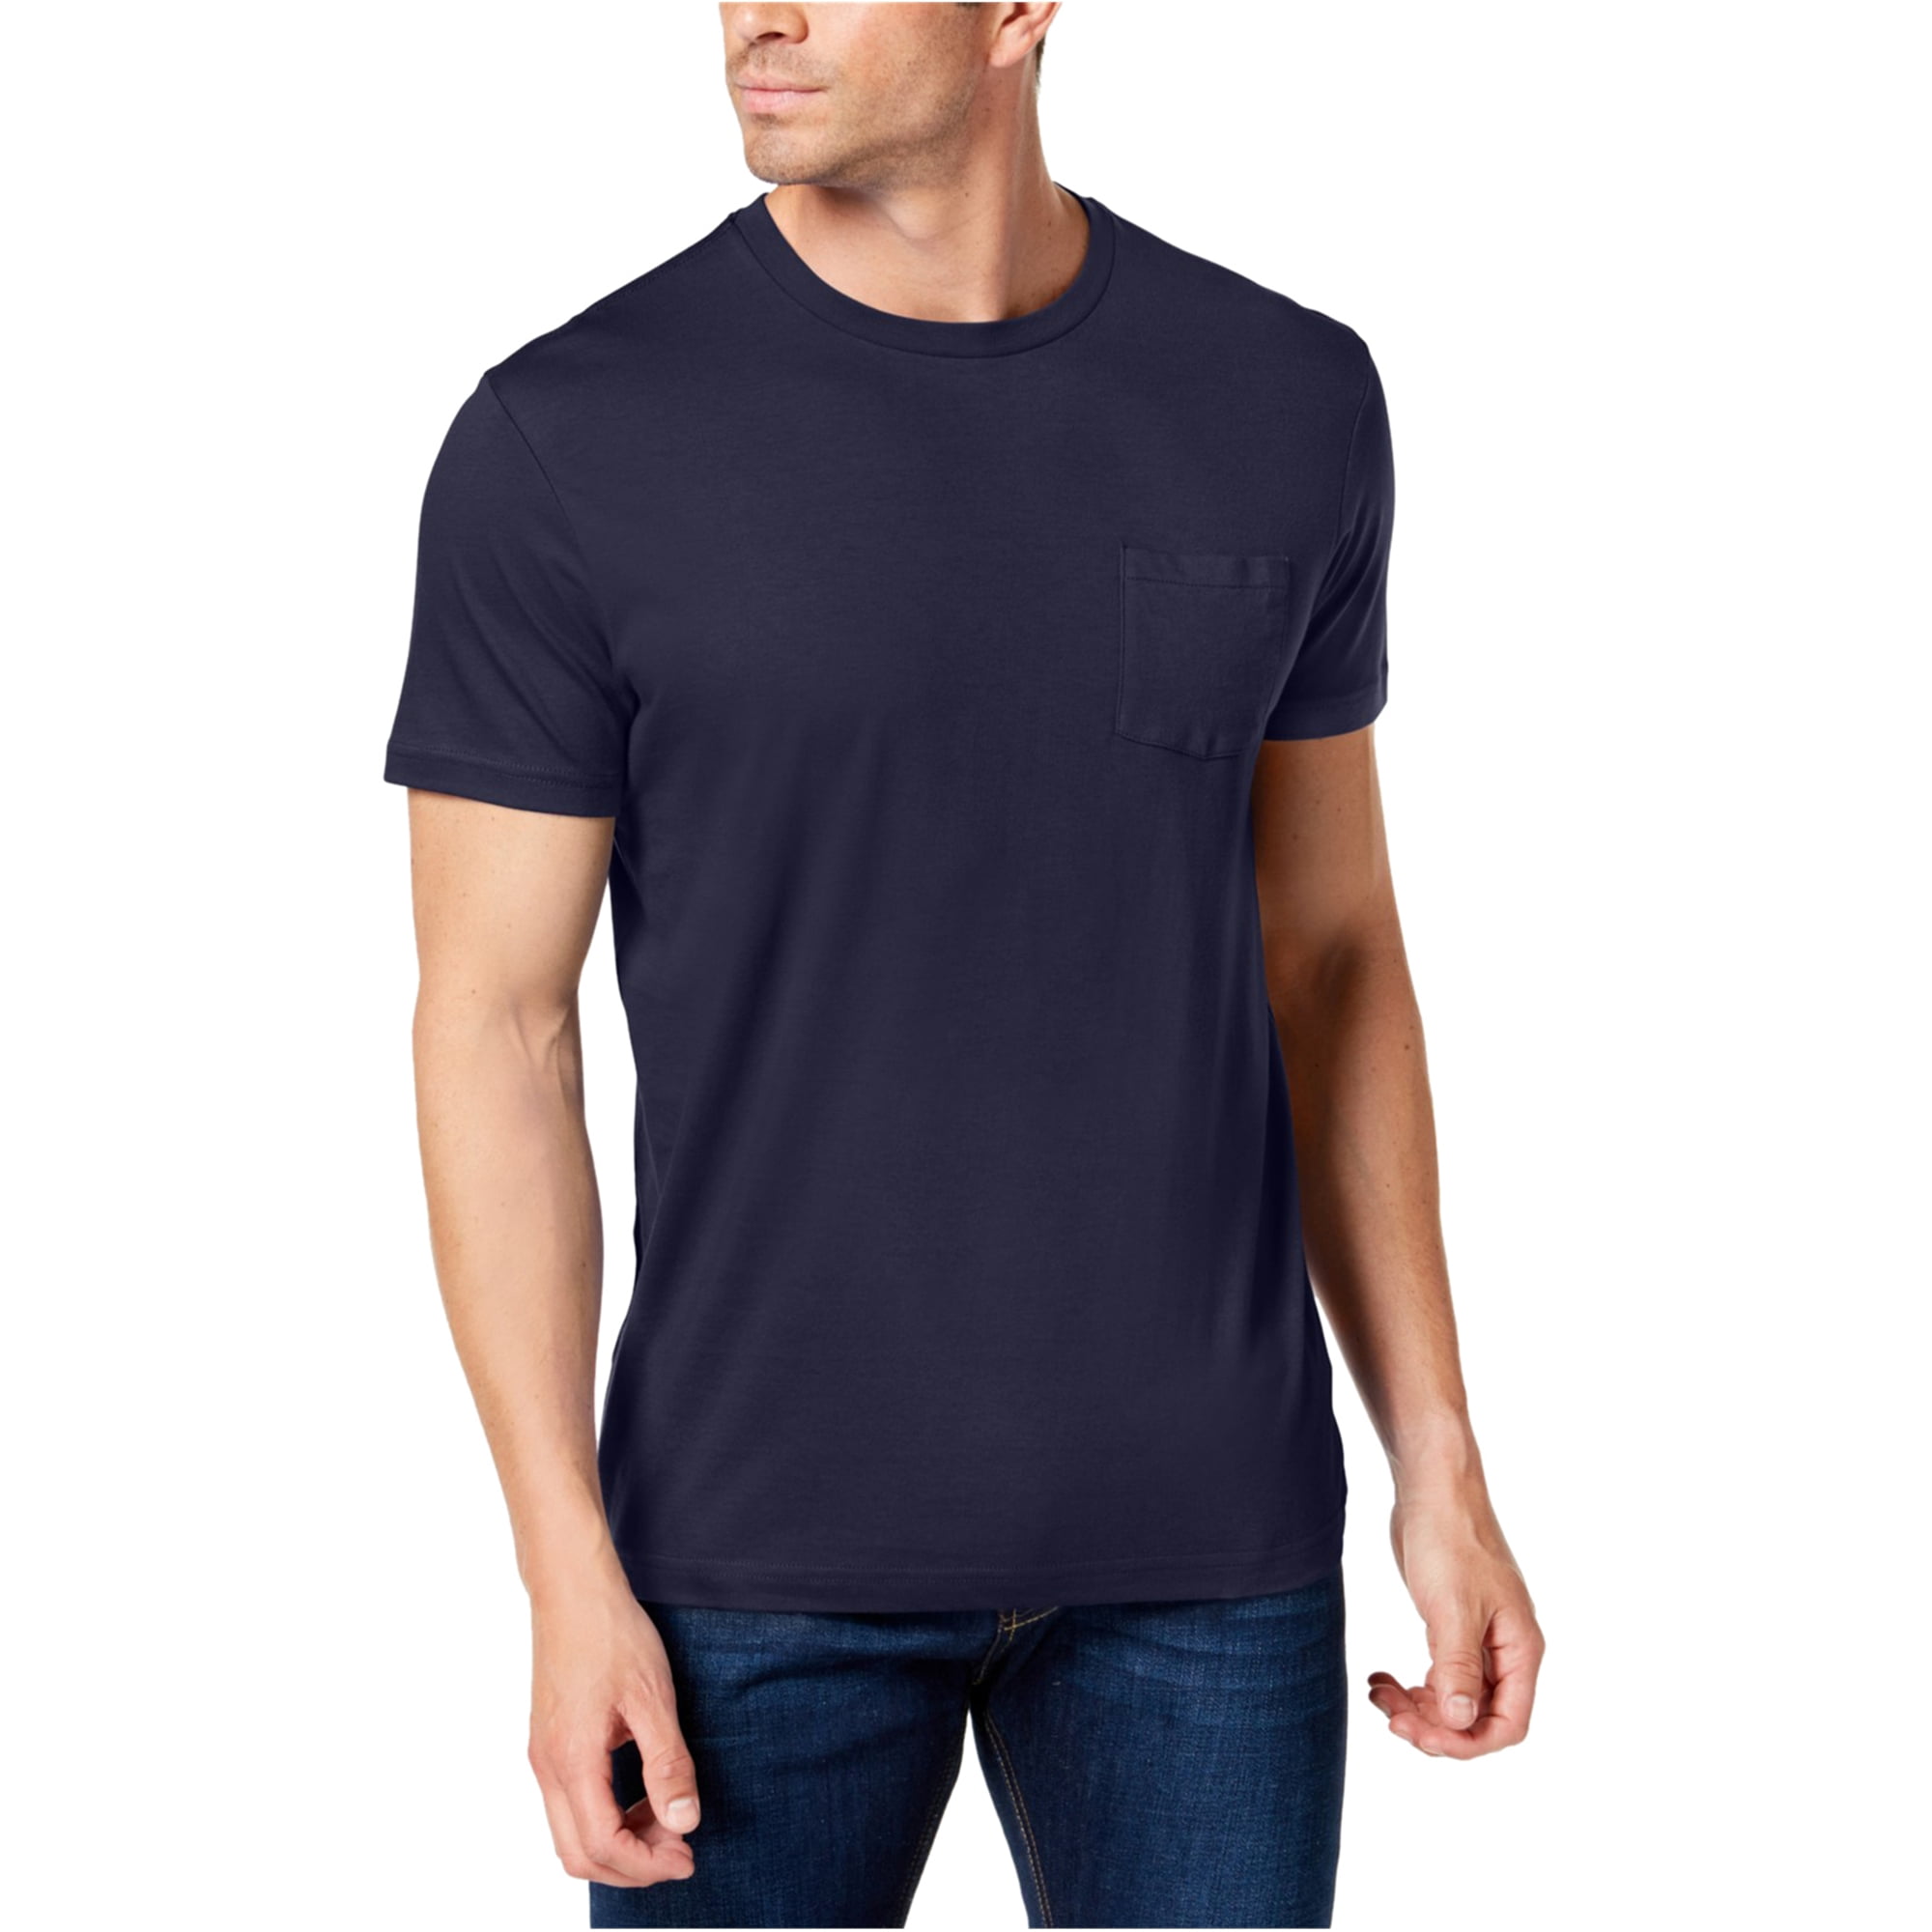 Club Room Mens Pocket Basic T-Shirt, Blue, Small - Walmart.com